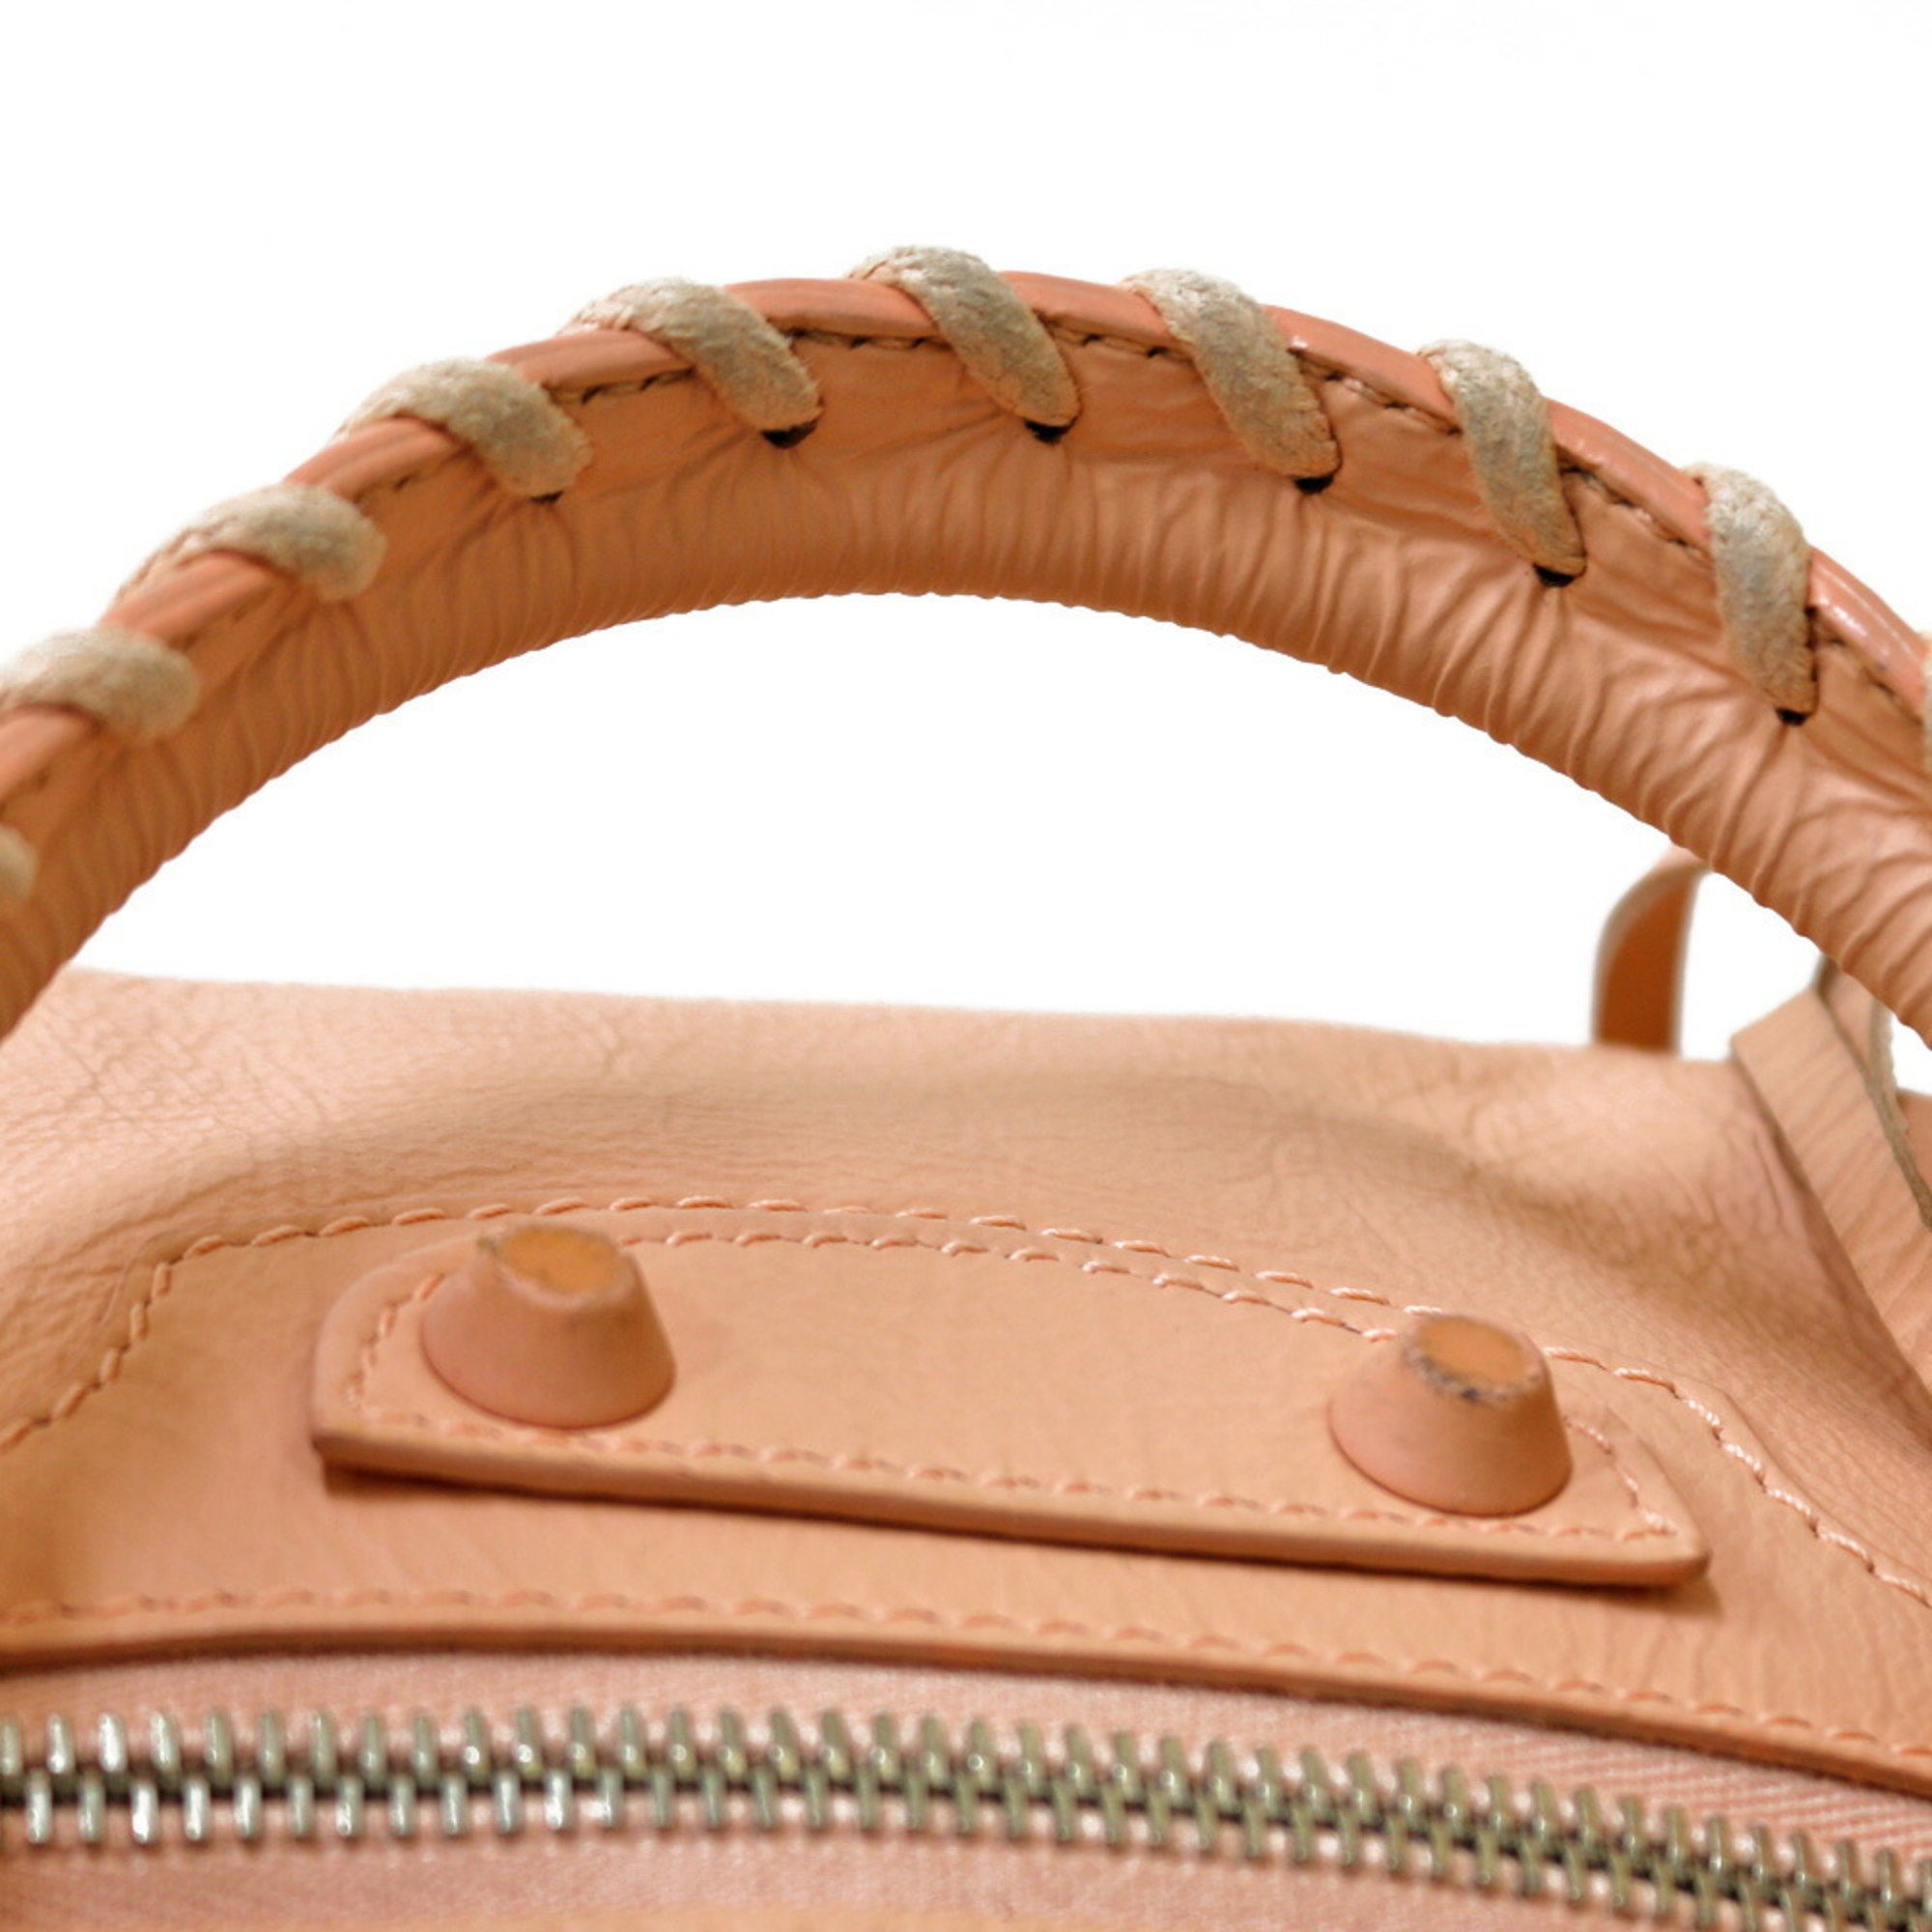 Balenciaga Shoulder Bag Leather Pink Women's BALENCIAGA BRB01000000000114